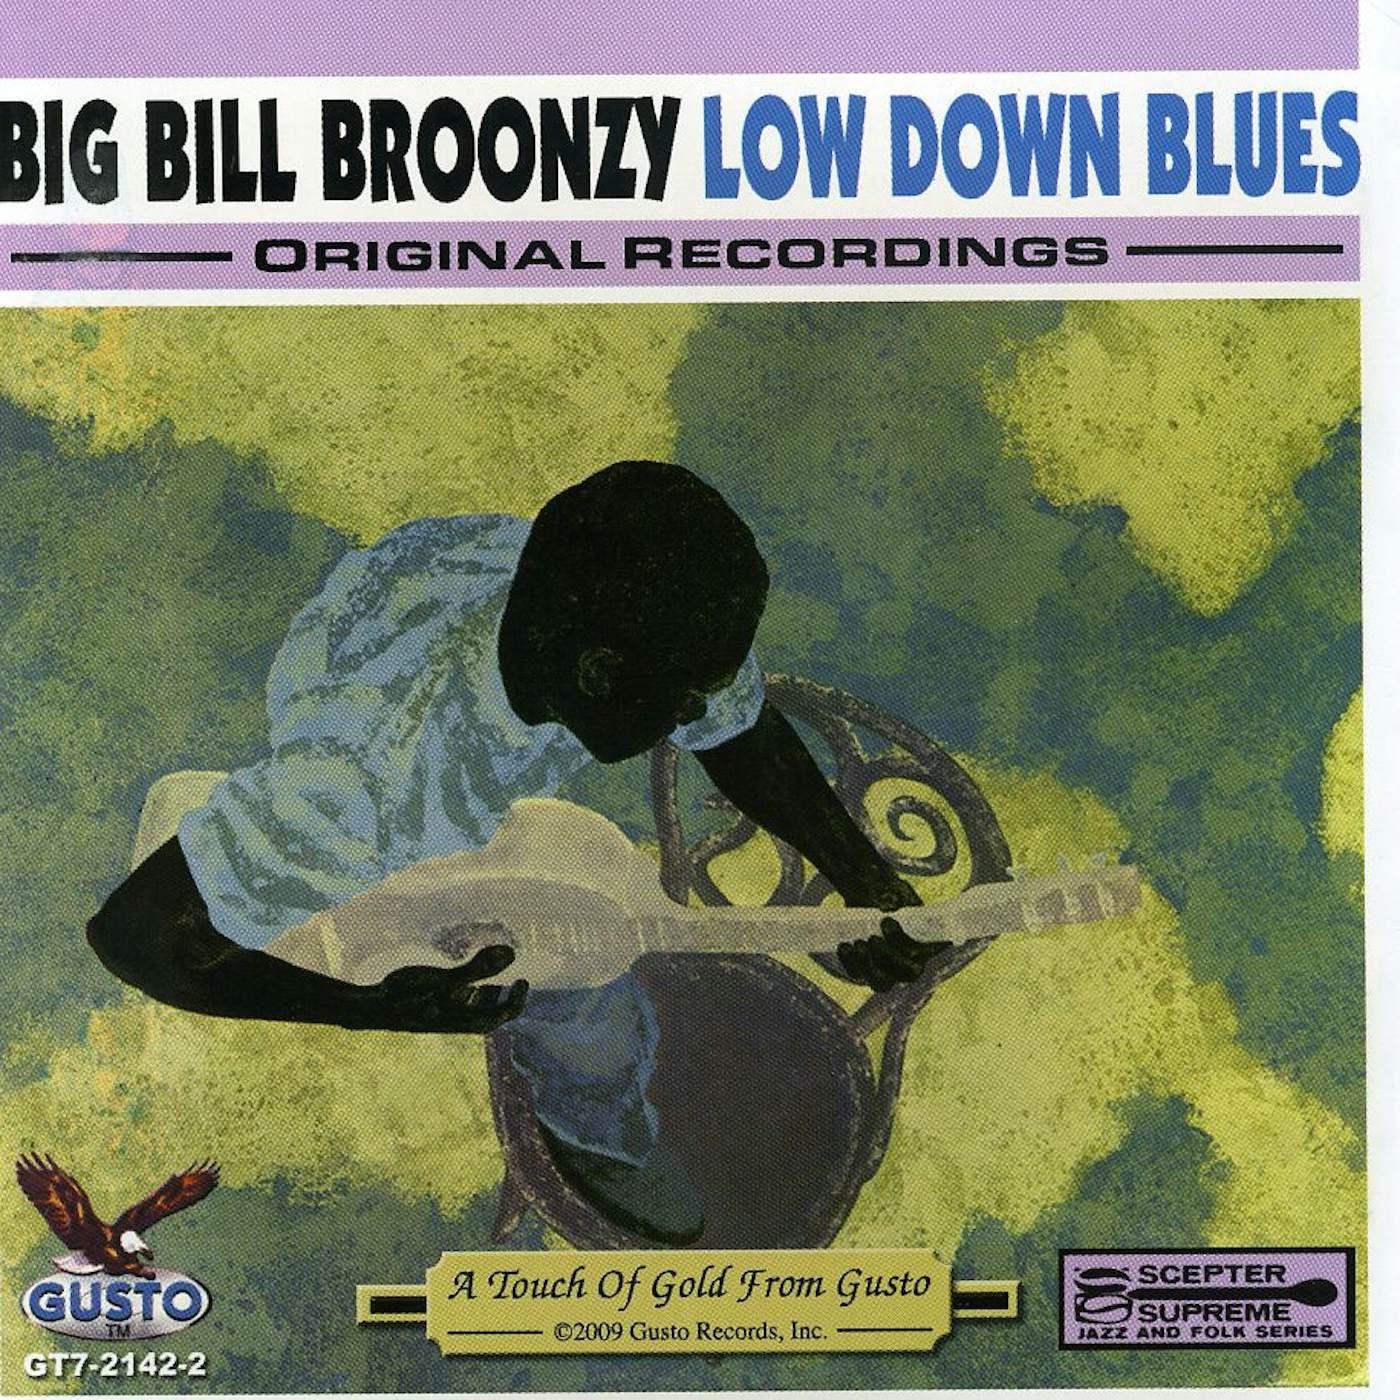 Big Bill Broonzy LOW DOWN BLUES CD